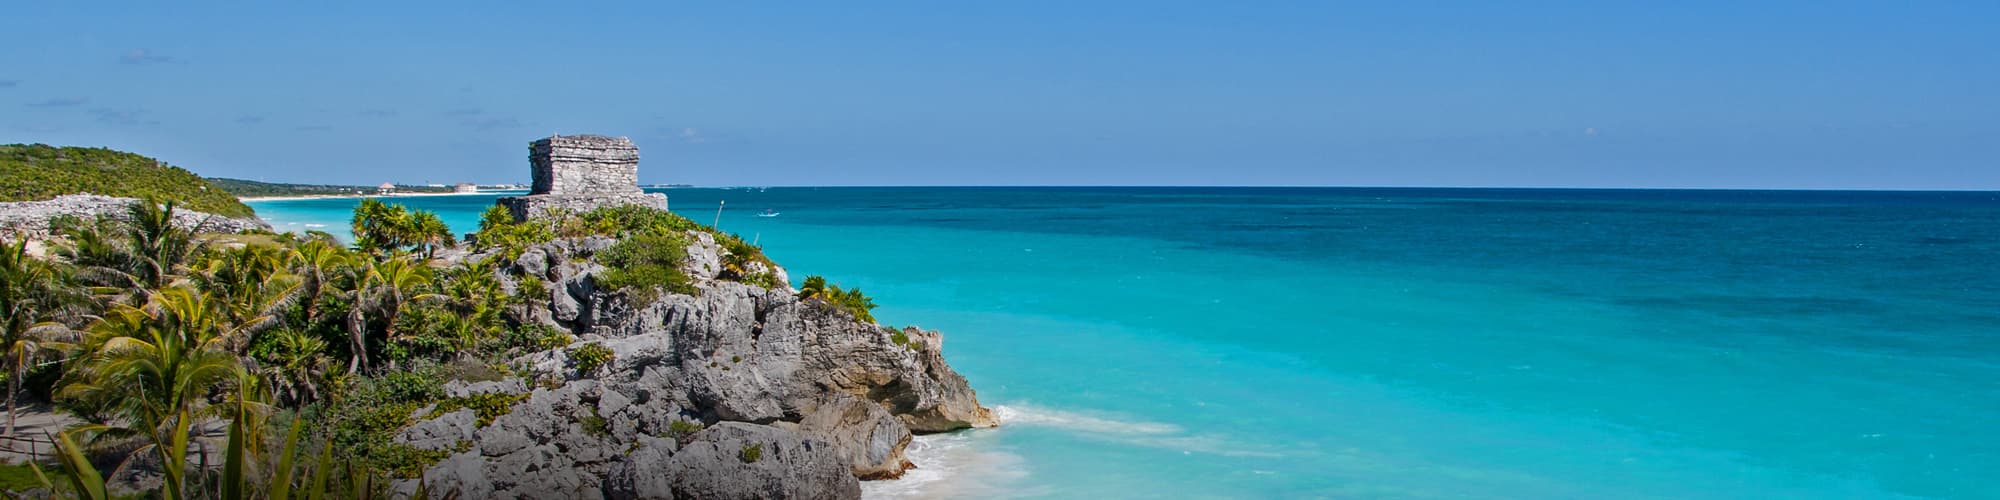 Trek au Yucatán et caraïbes : randonnée,circuit et voyage  © Pakhnyushchyy / iStock